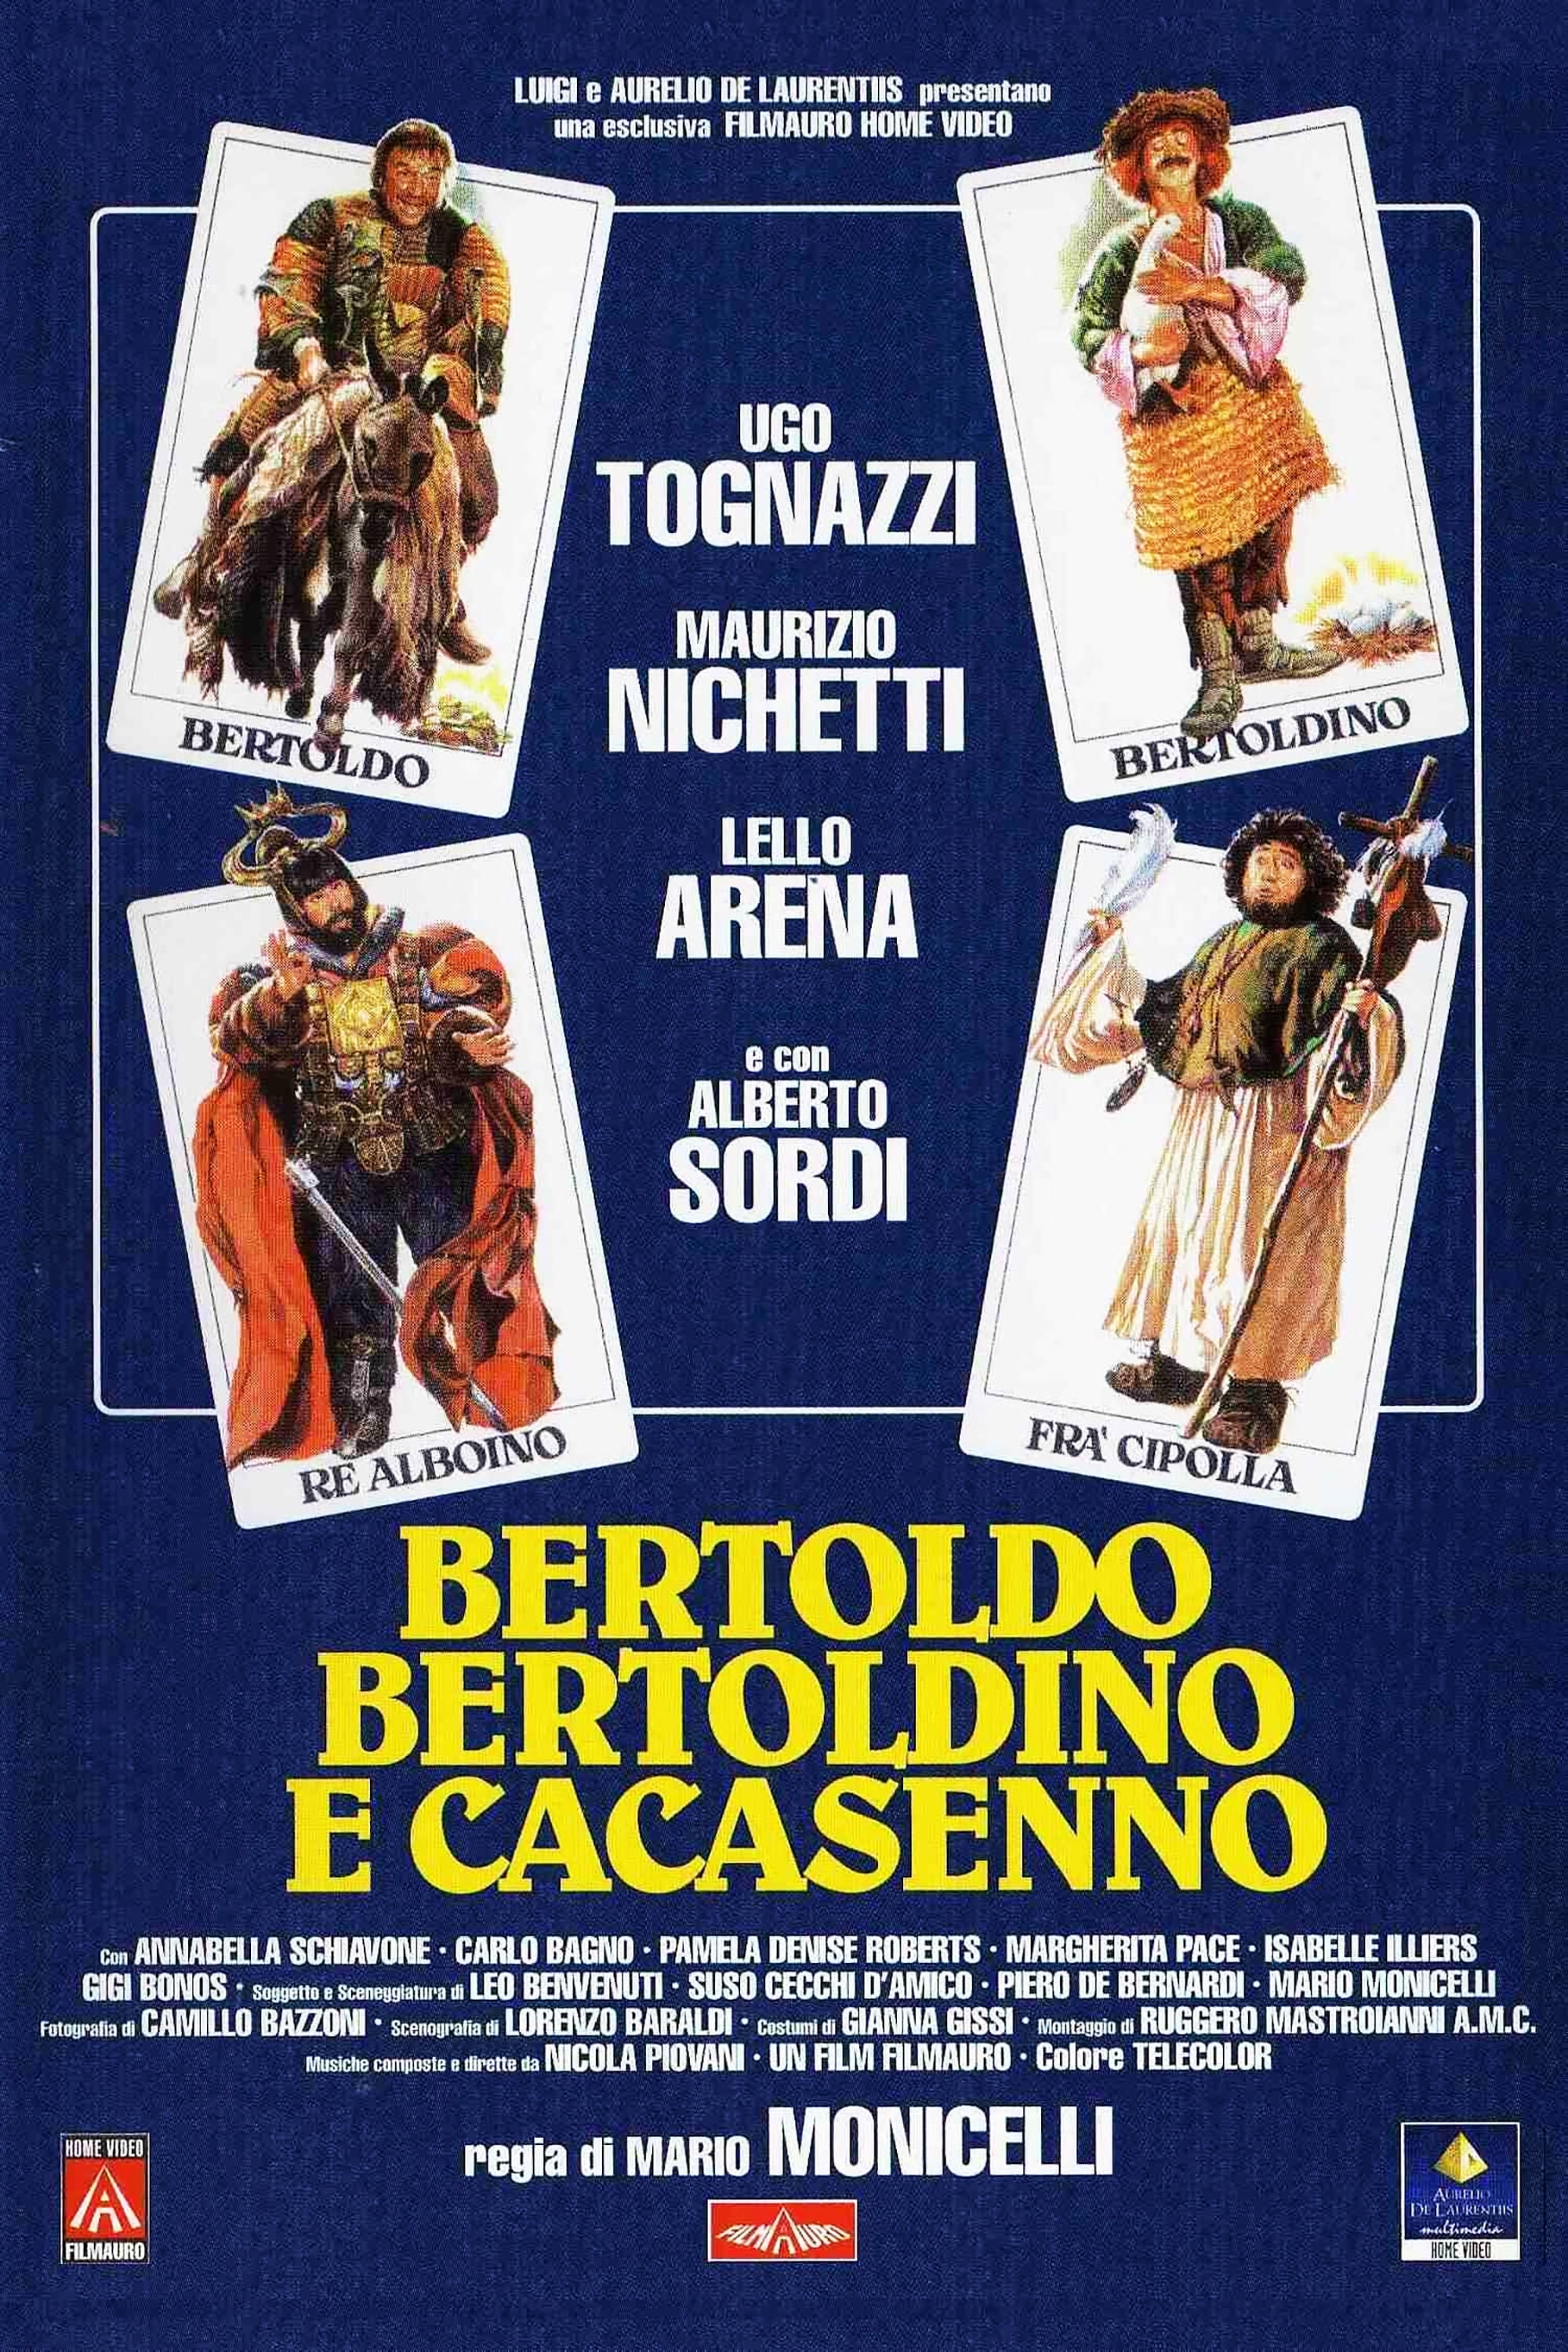 Bertoldo, Bertoldino, and Cacasenno (1984)